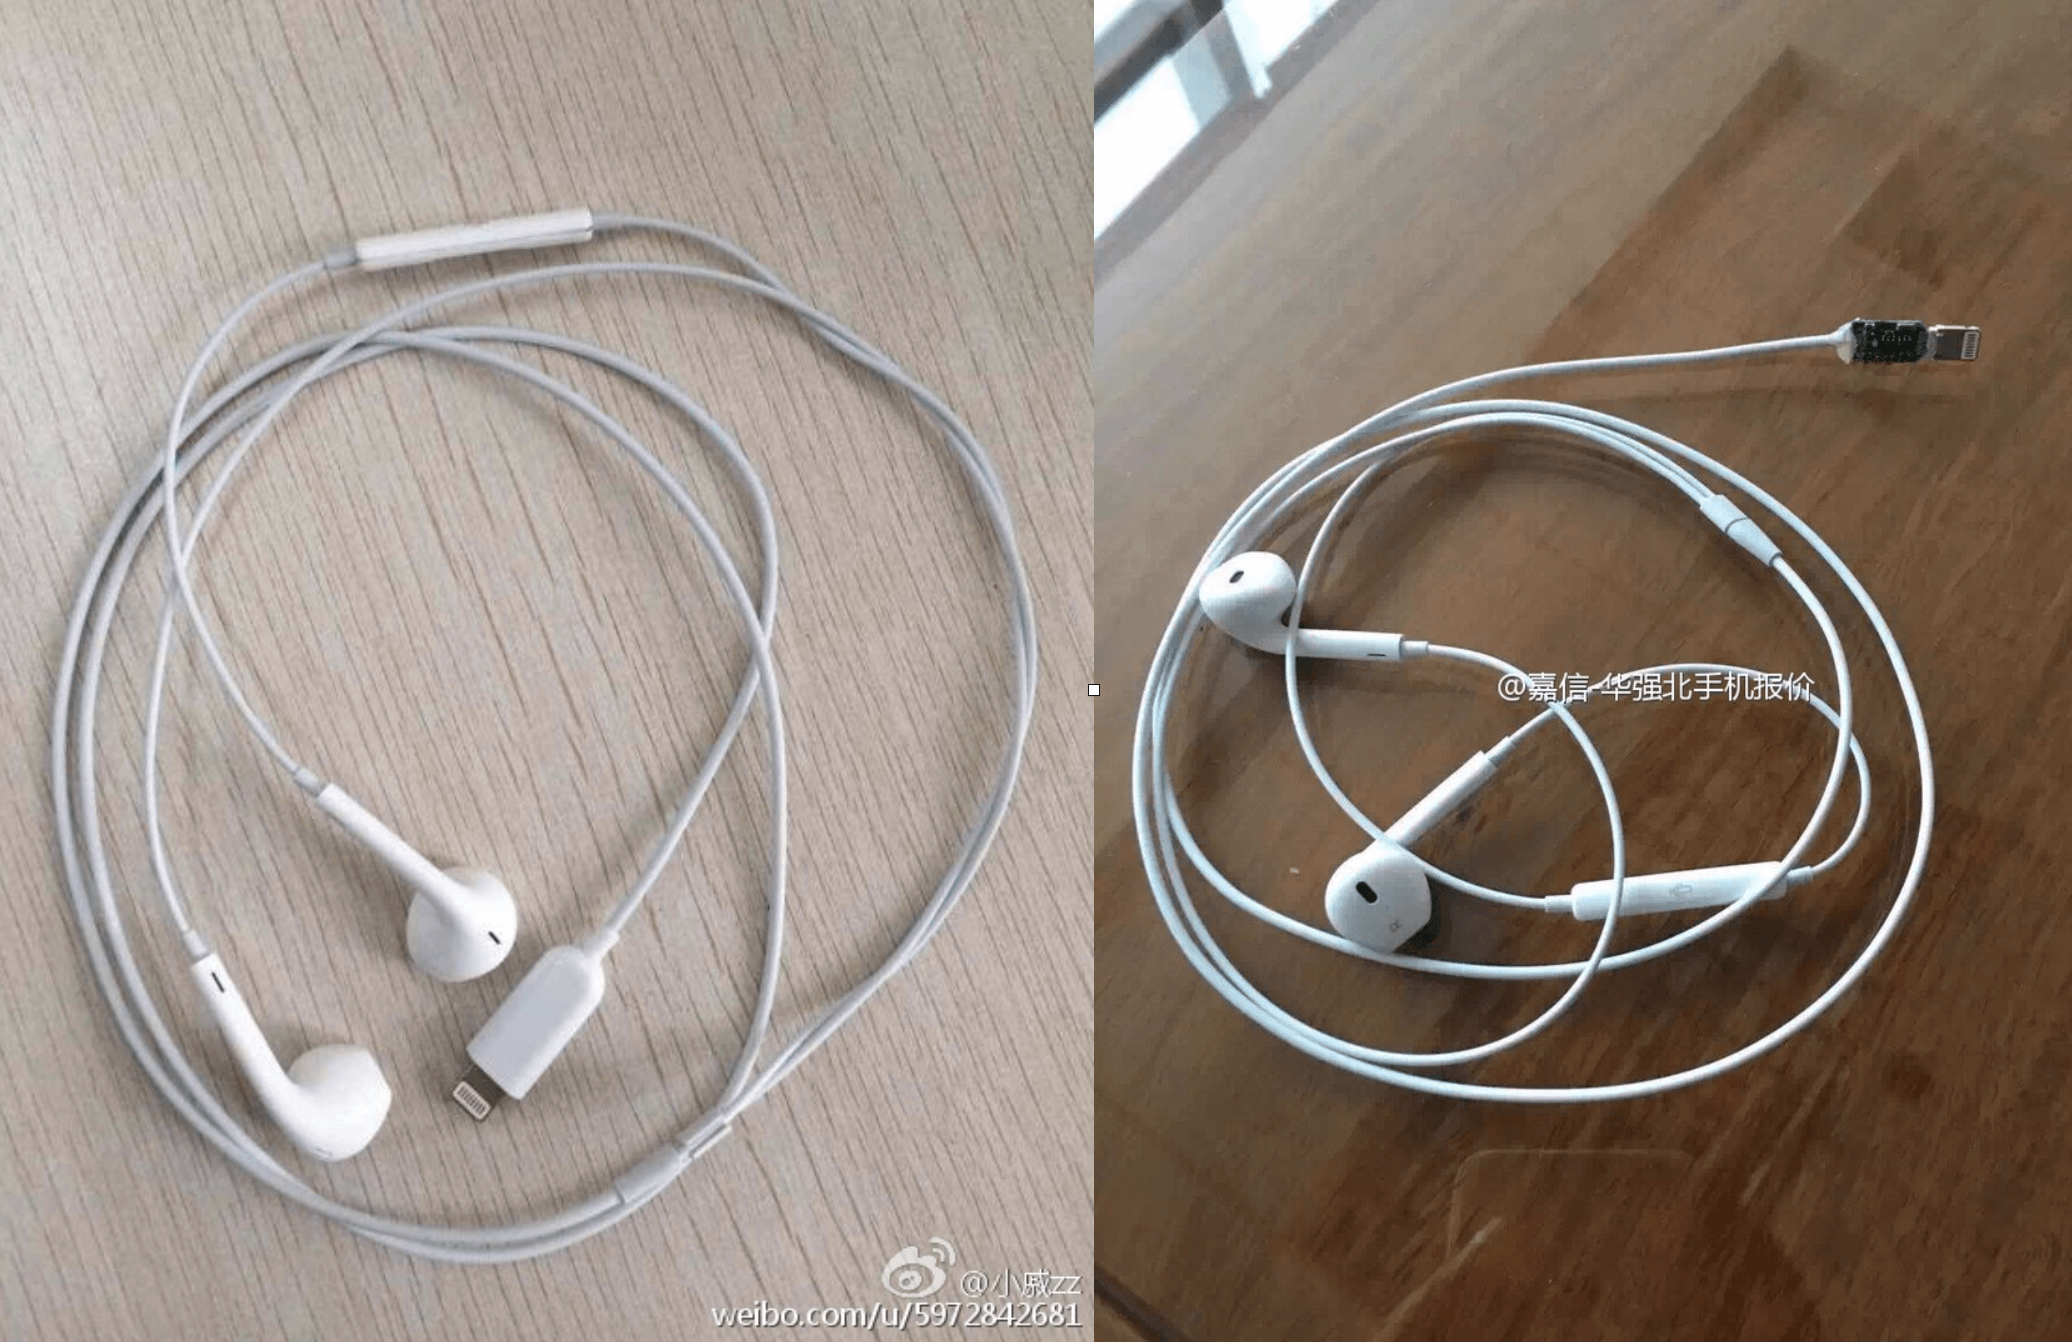 iPhone-7-EarPods